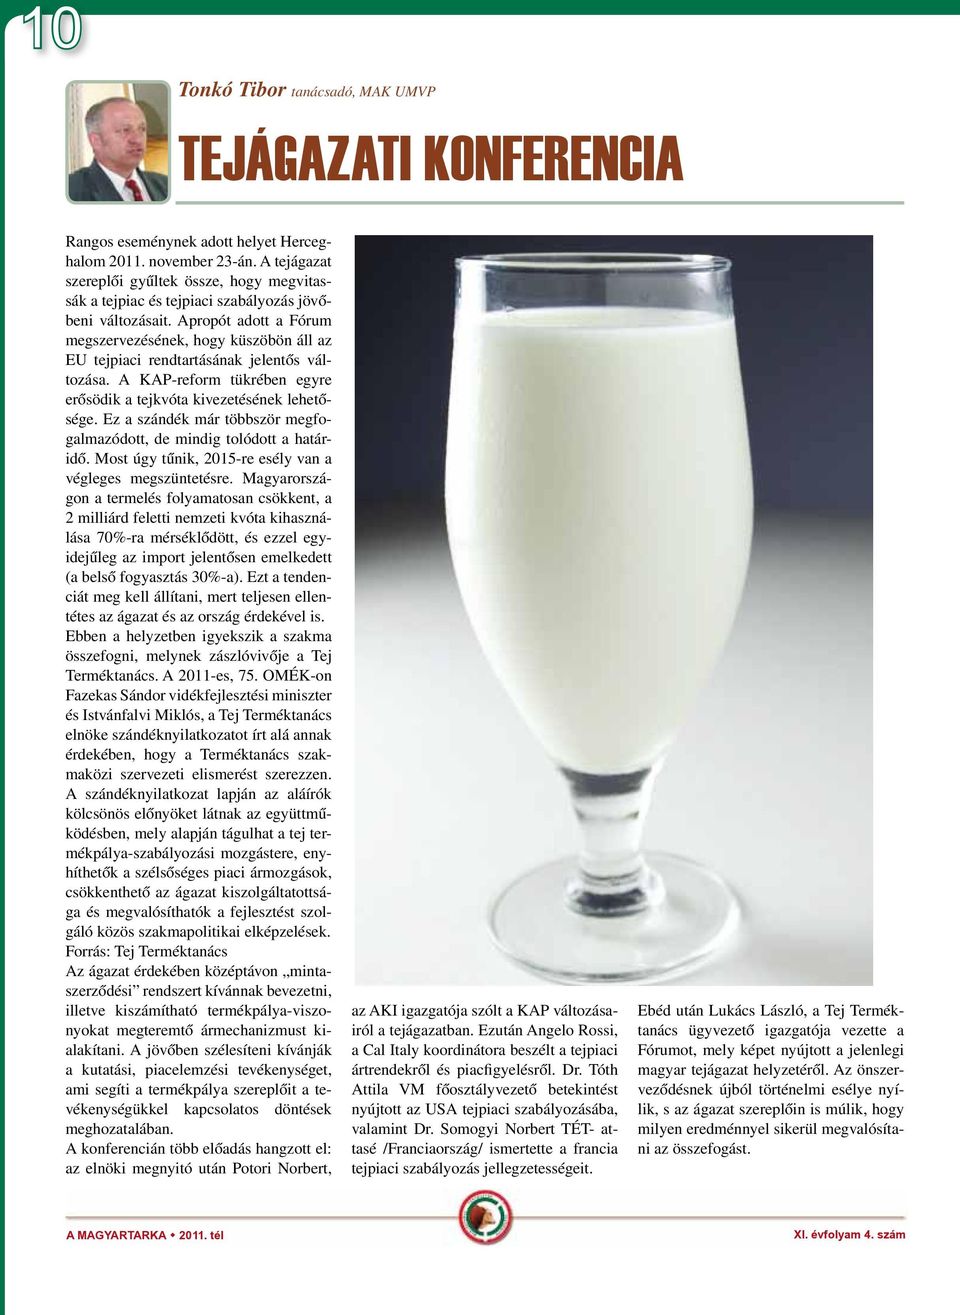 Apropót adott a Fórum megszervezésének, hogy küszöbön áll az EU tejpiaci rendtartásának jelentős változása. A KAP-reform tükrében egyre erősödik a tejkvóta kivezetésének lehetősége.